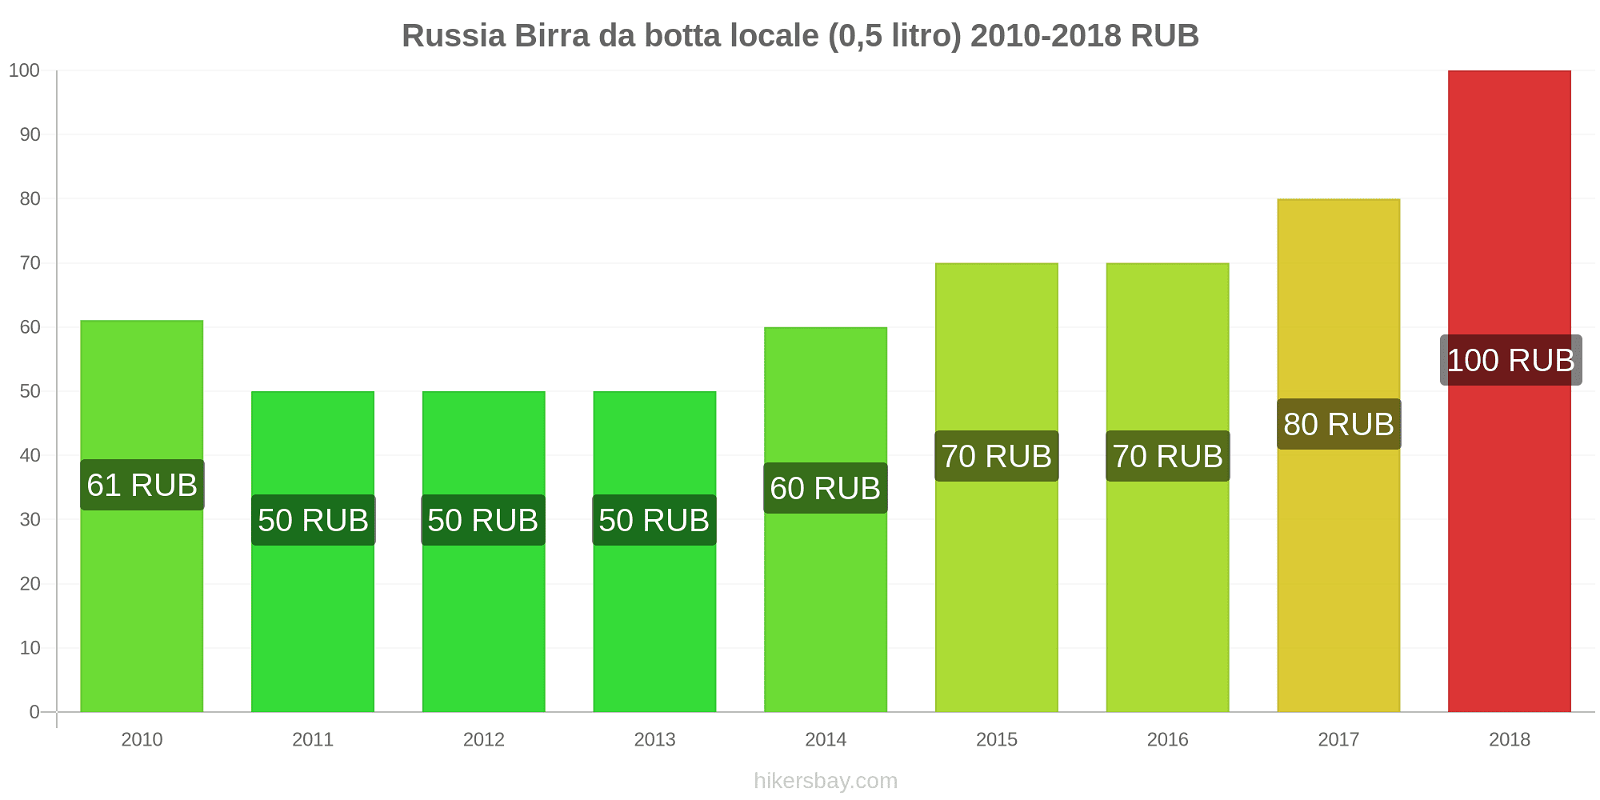 Russia cambi di prezzo Birra alla spina (0,5 litri) hikersbay.com